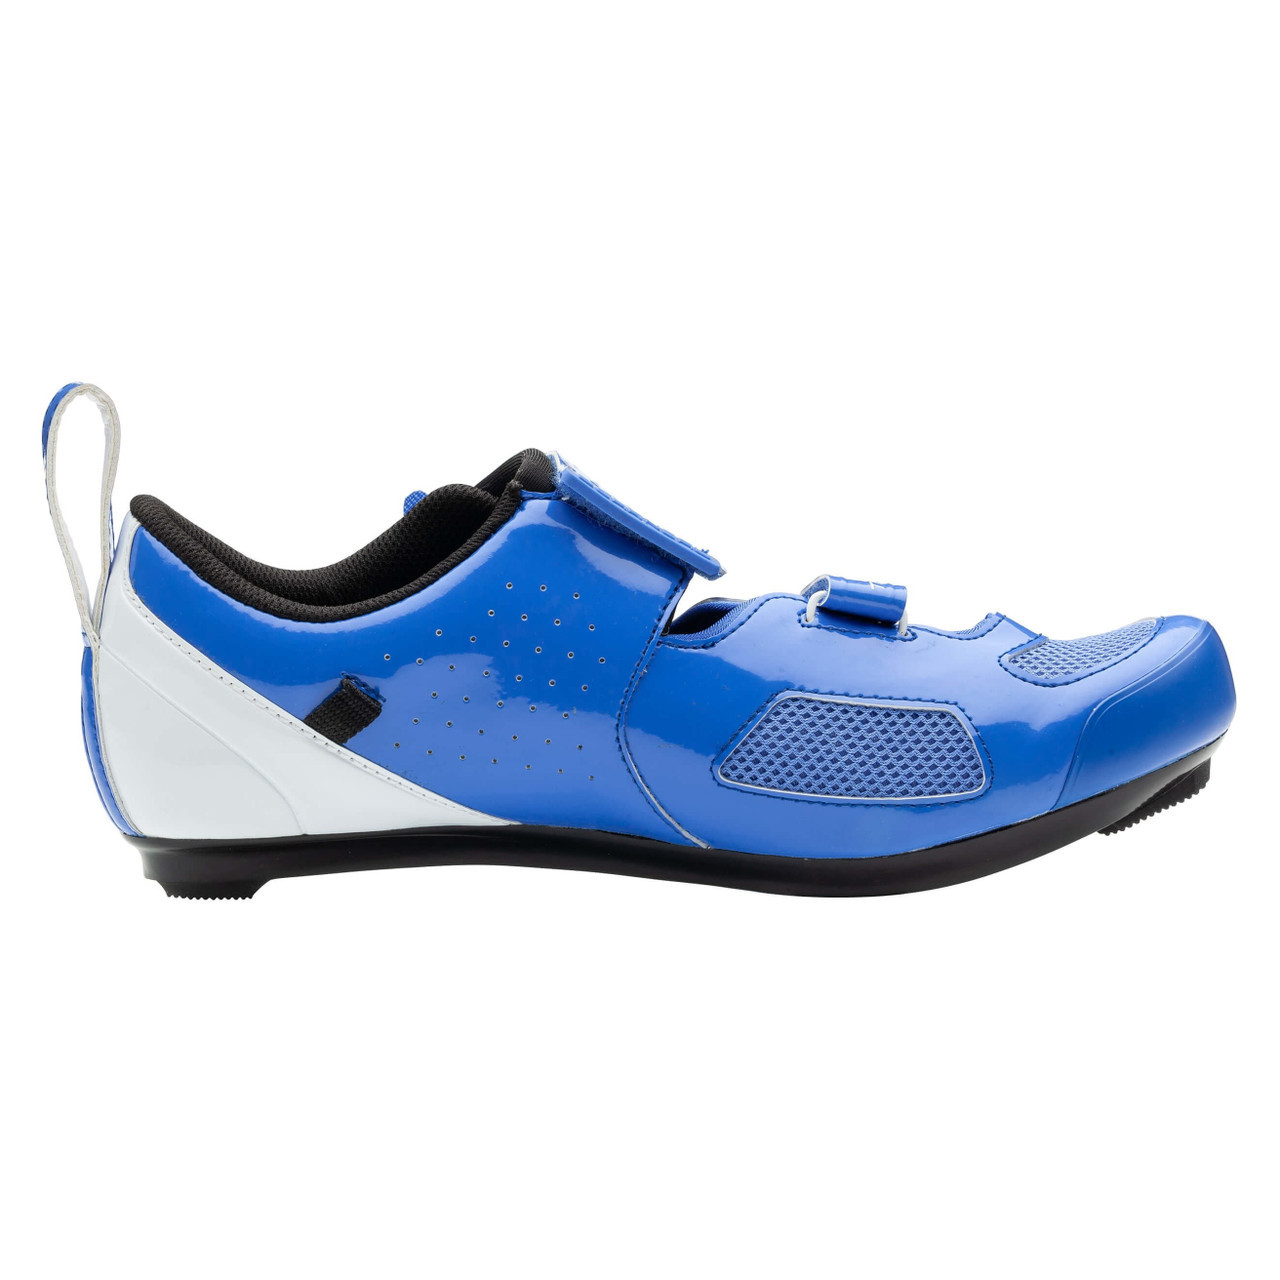 Louis Garneau Blue Cycling Shoes for Men for sale